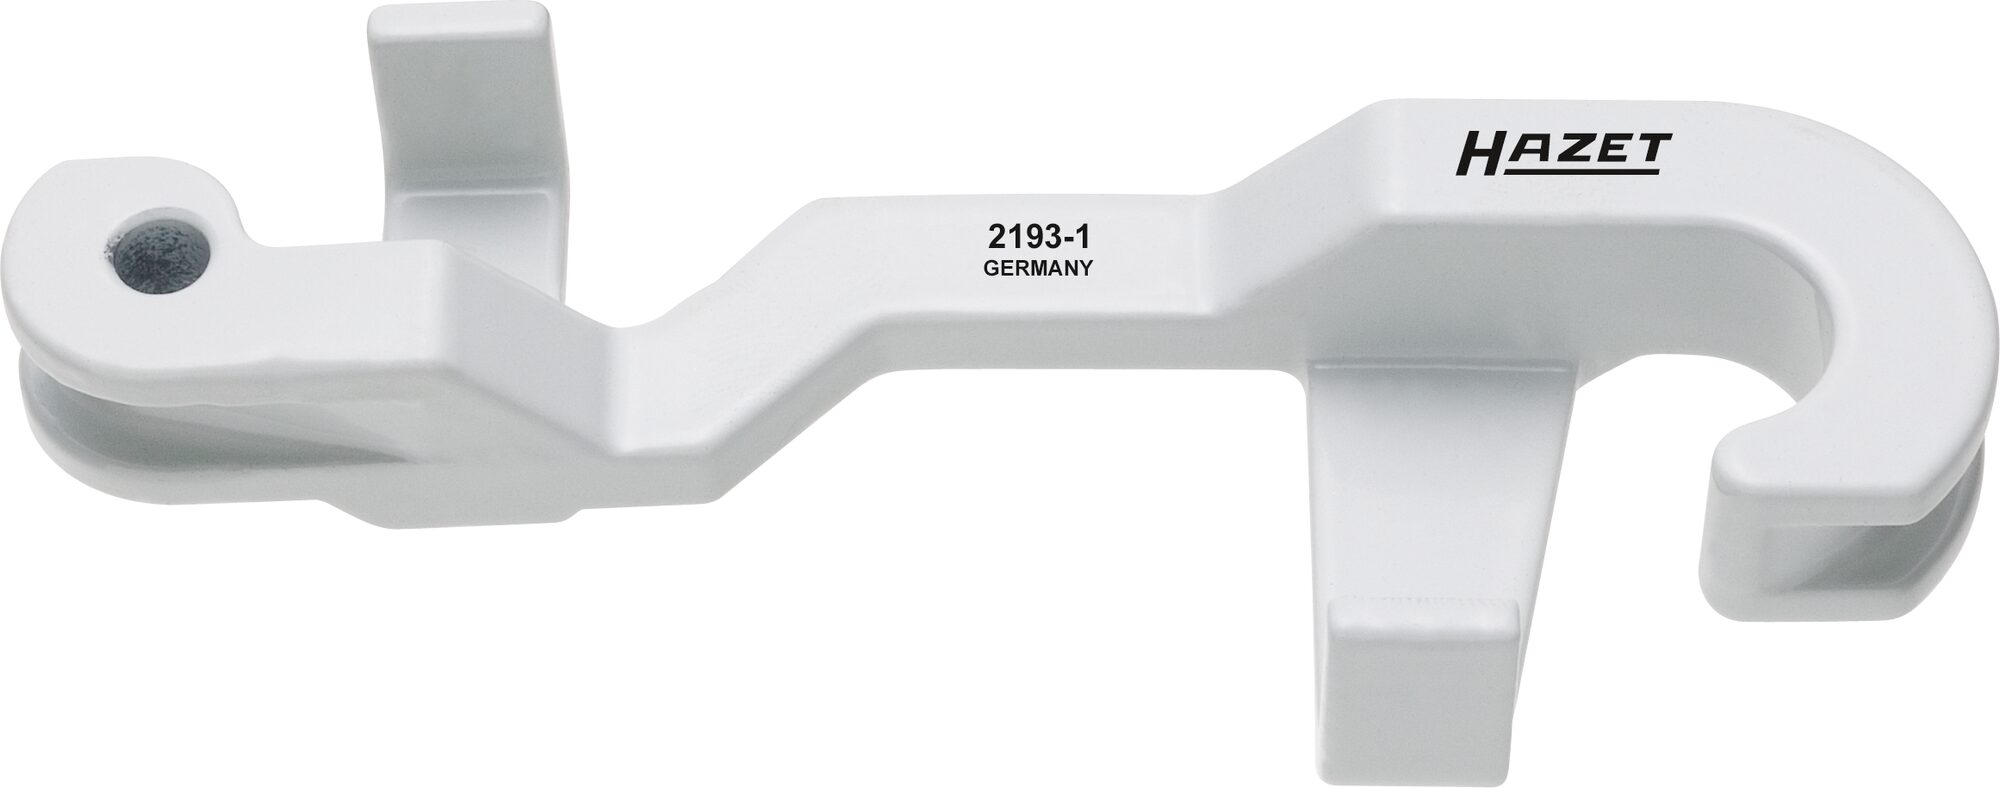 HAZET Biege Werkzeug 2193-1 · 4.75 mm